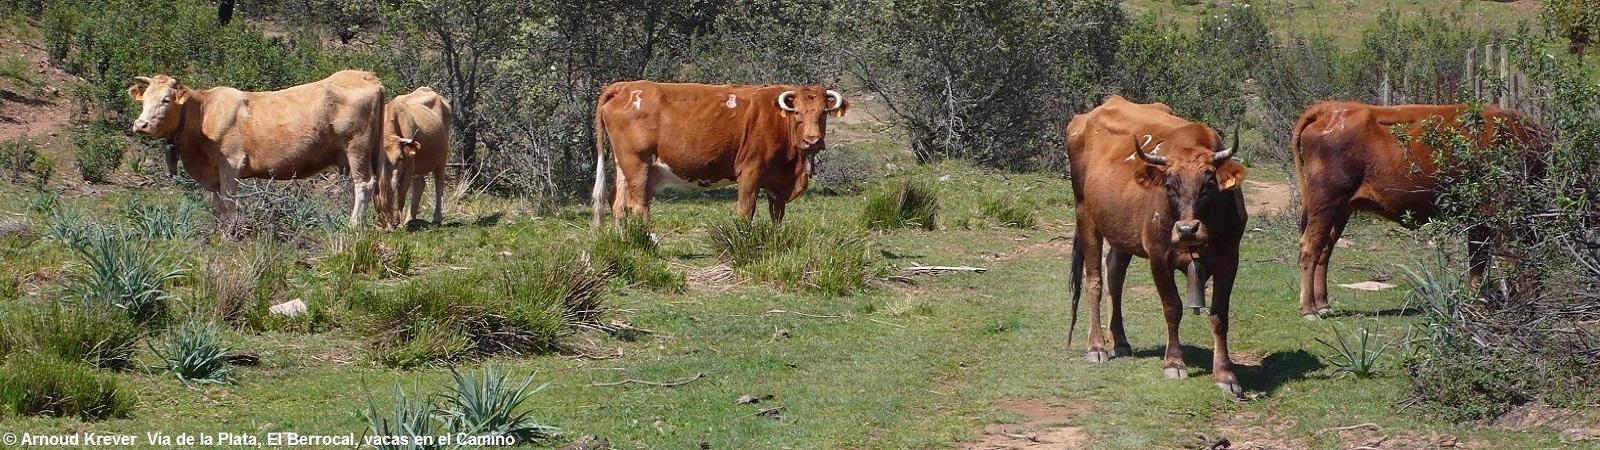 Plata0112 Koeien op de Camino